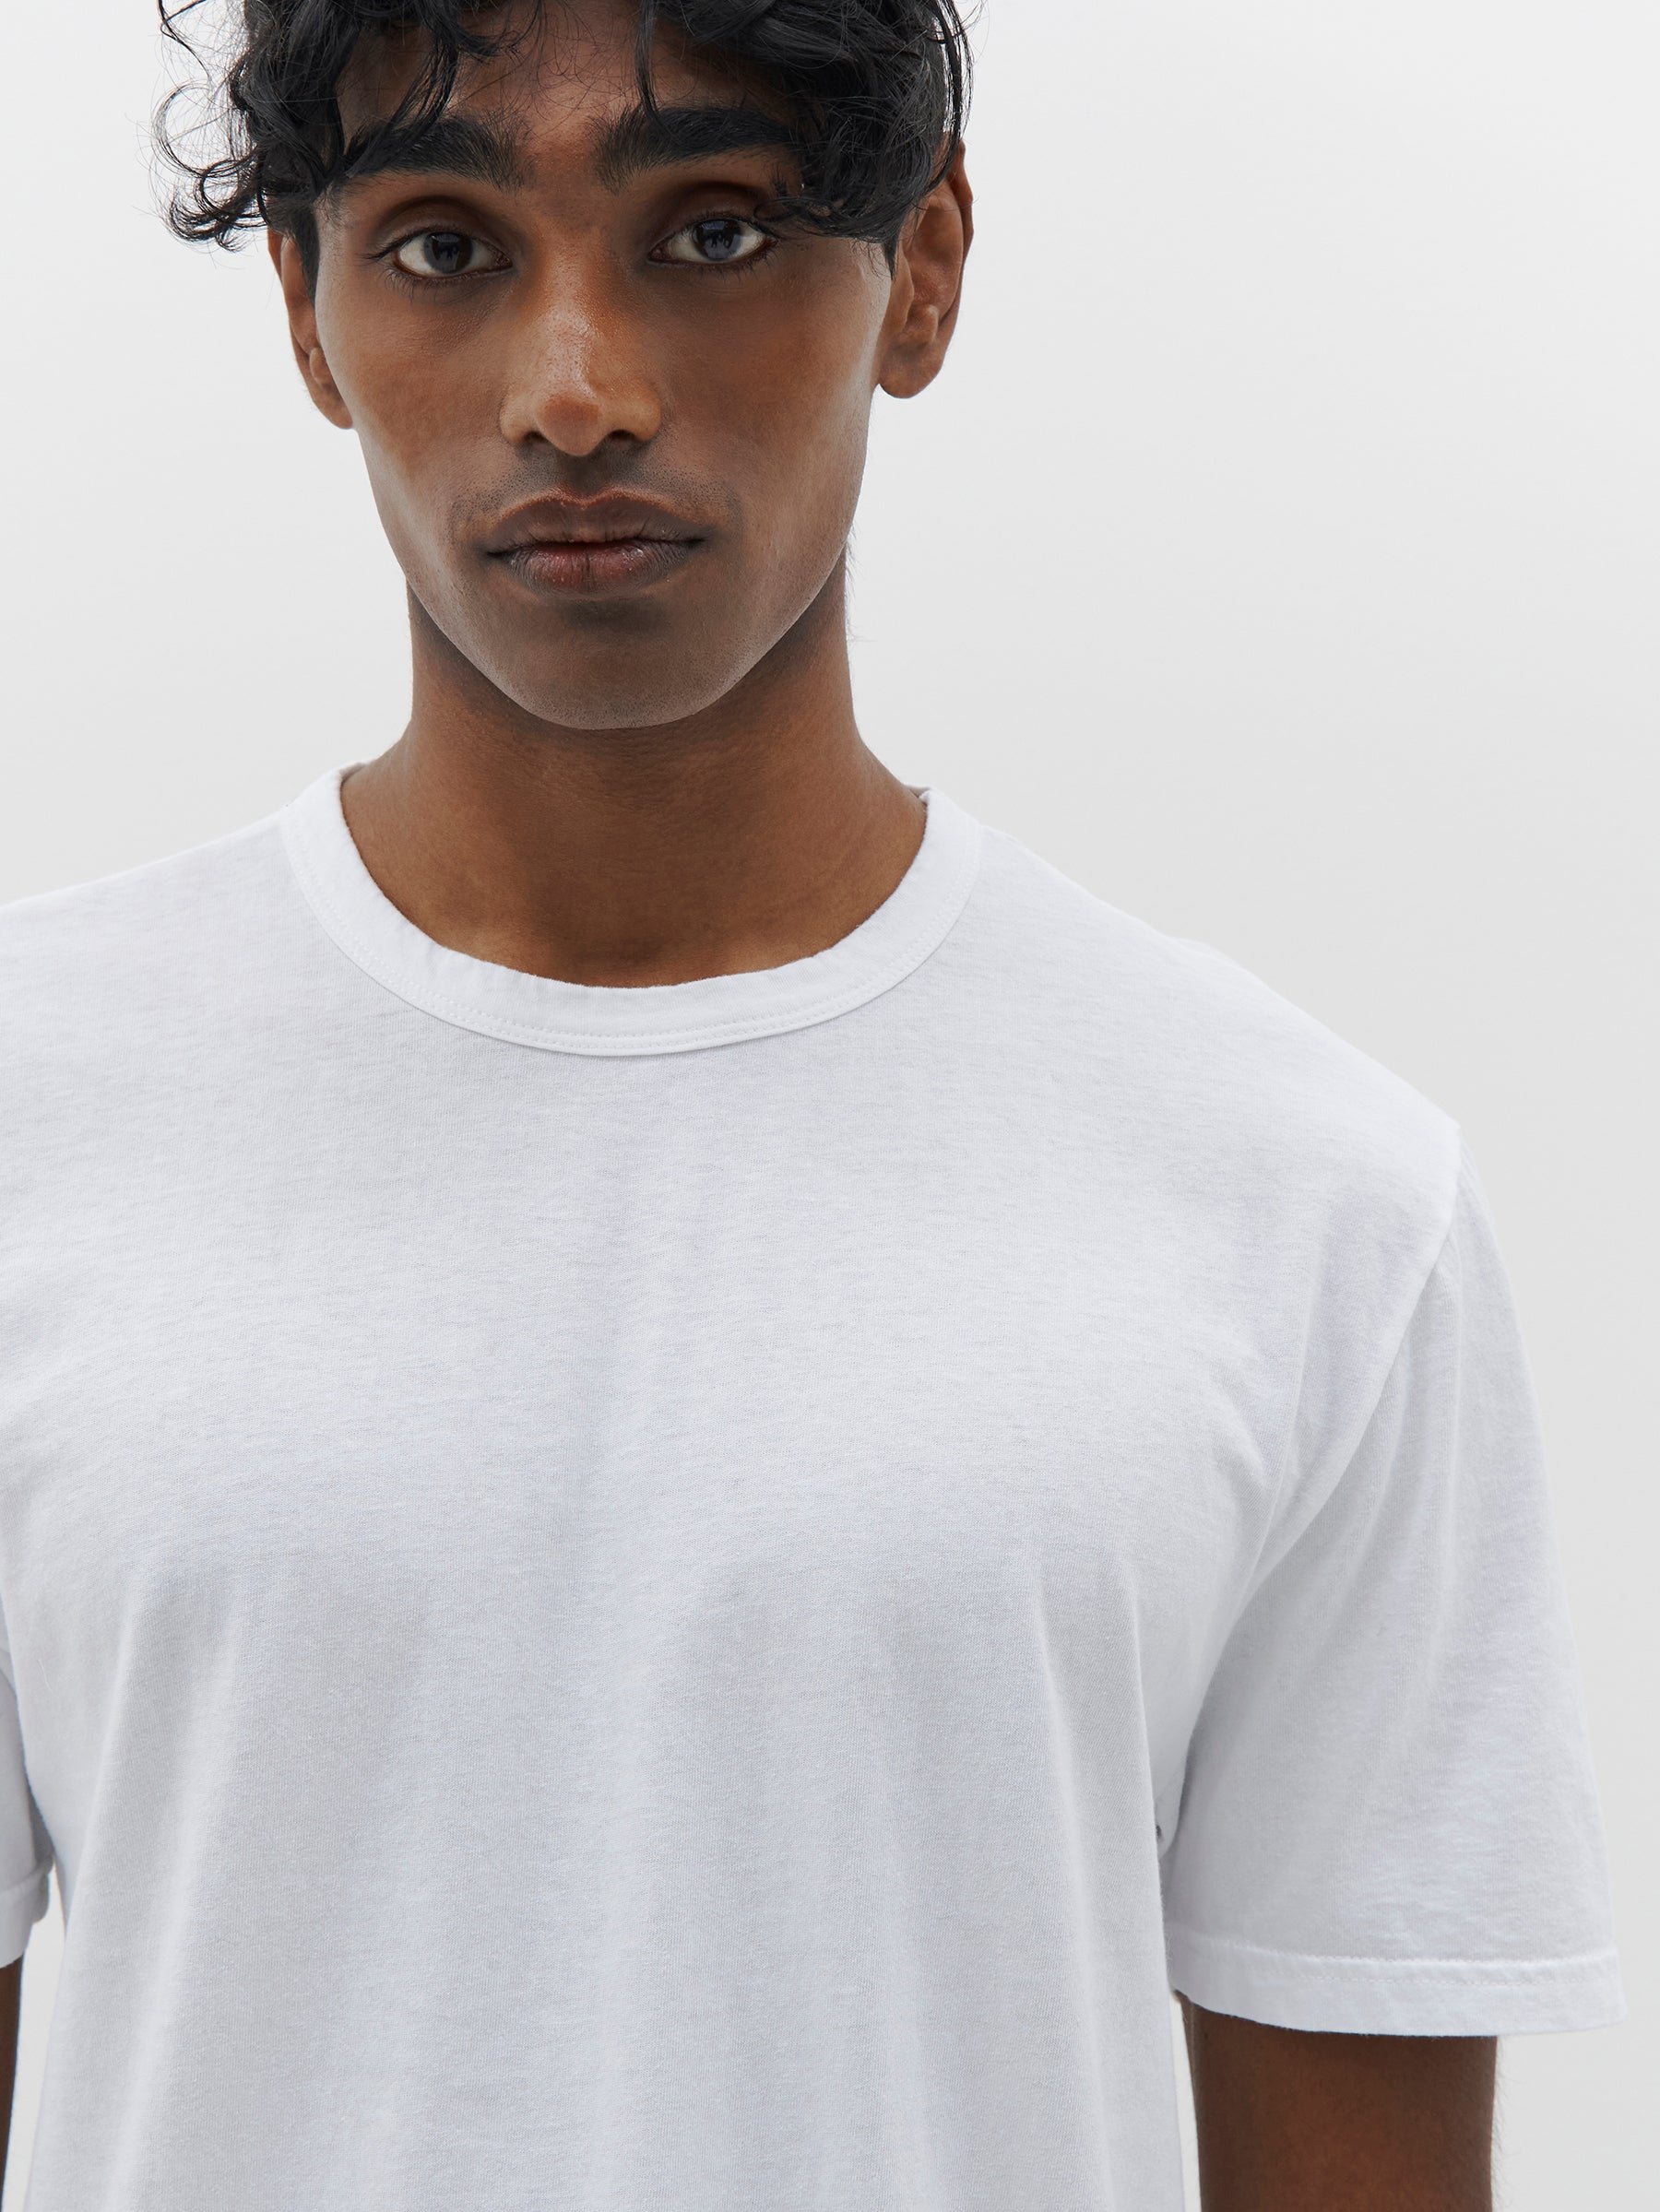 Søgemaskine markedsføring frygt Leeds slim fit t.shirt in white